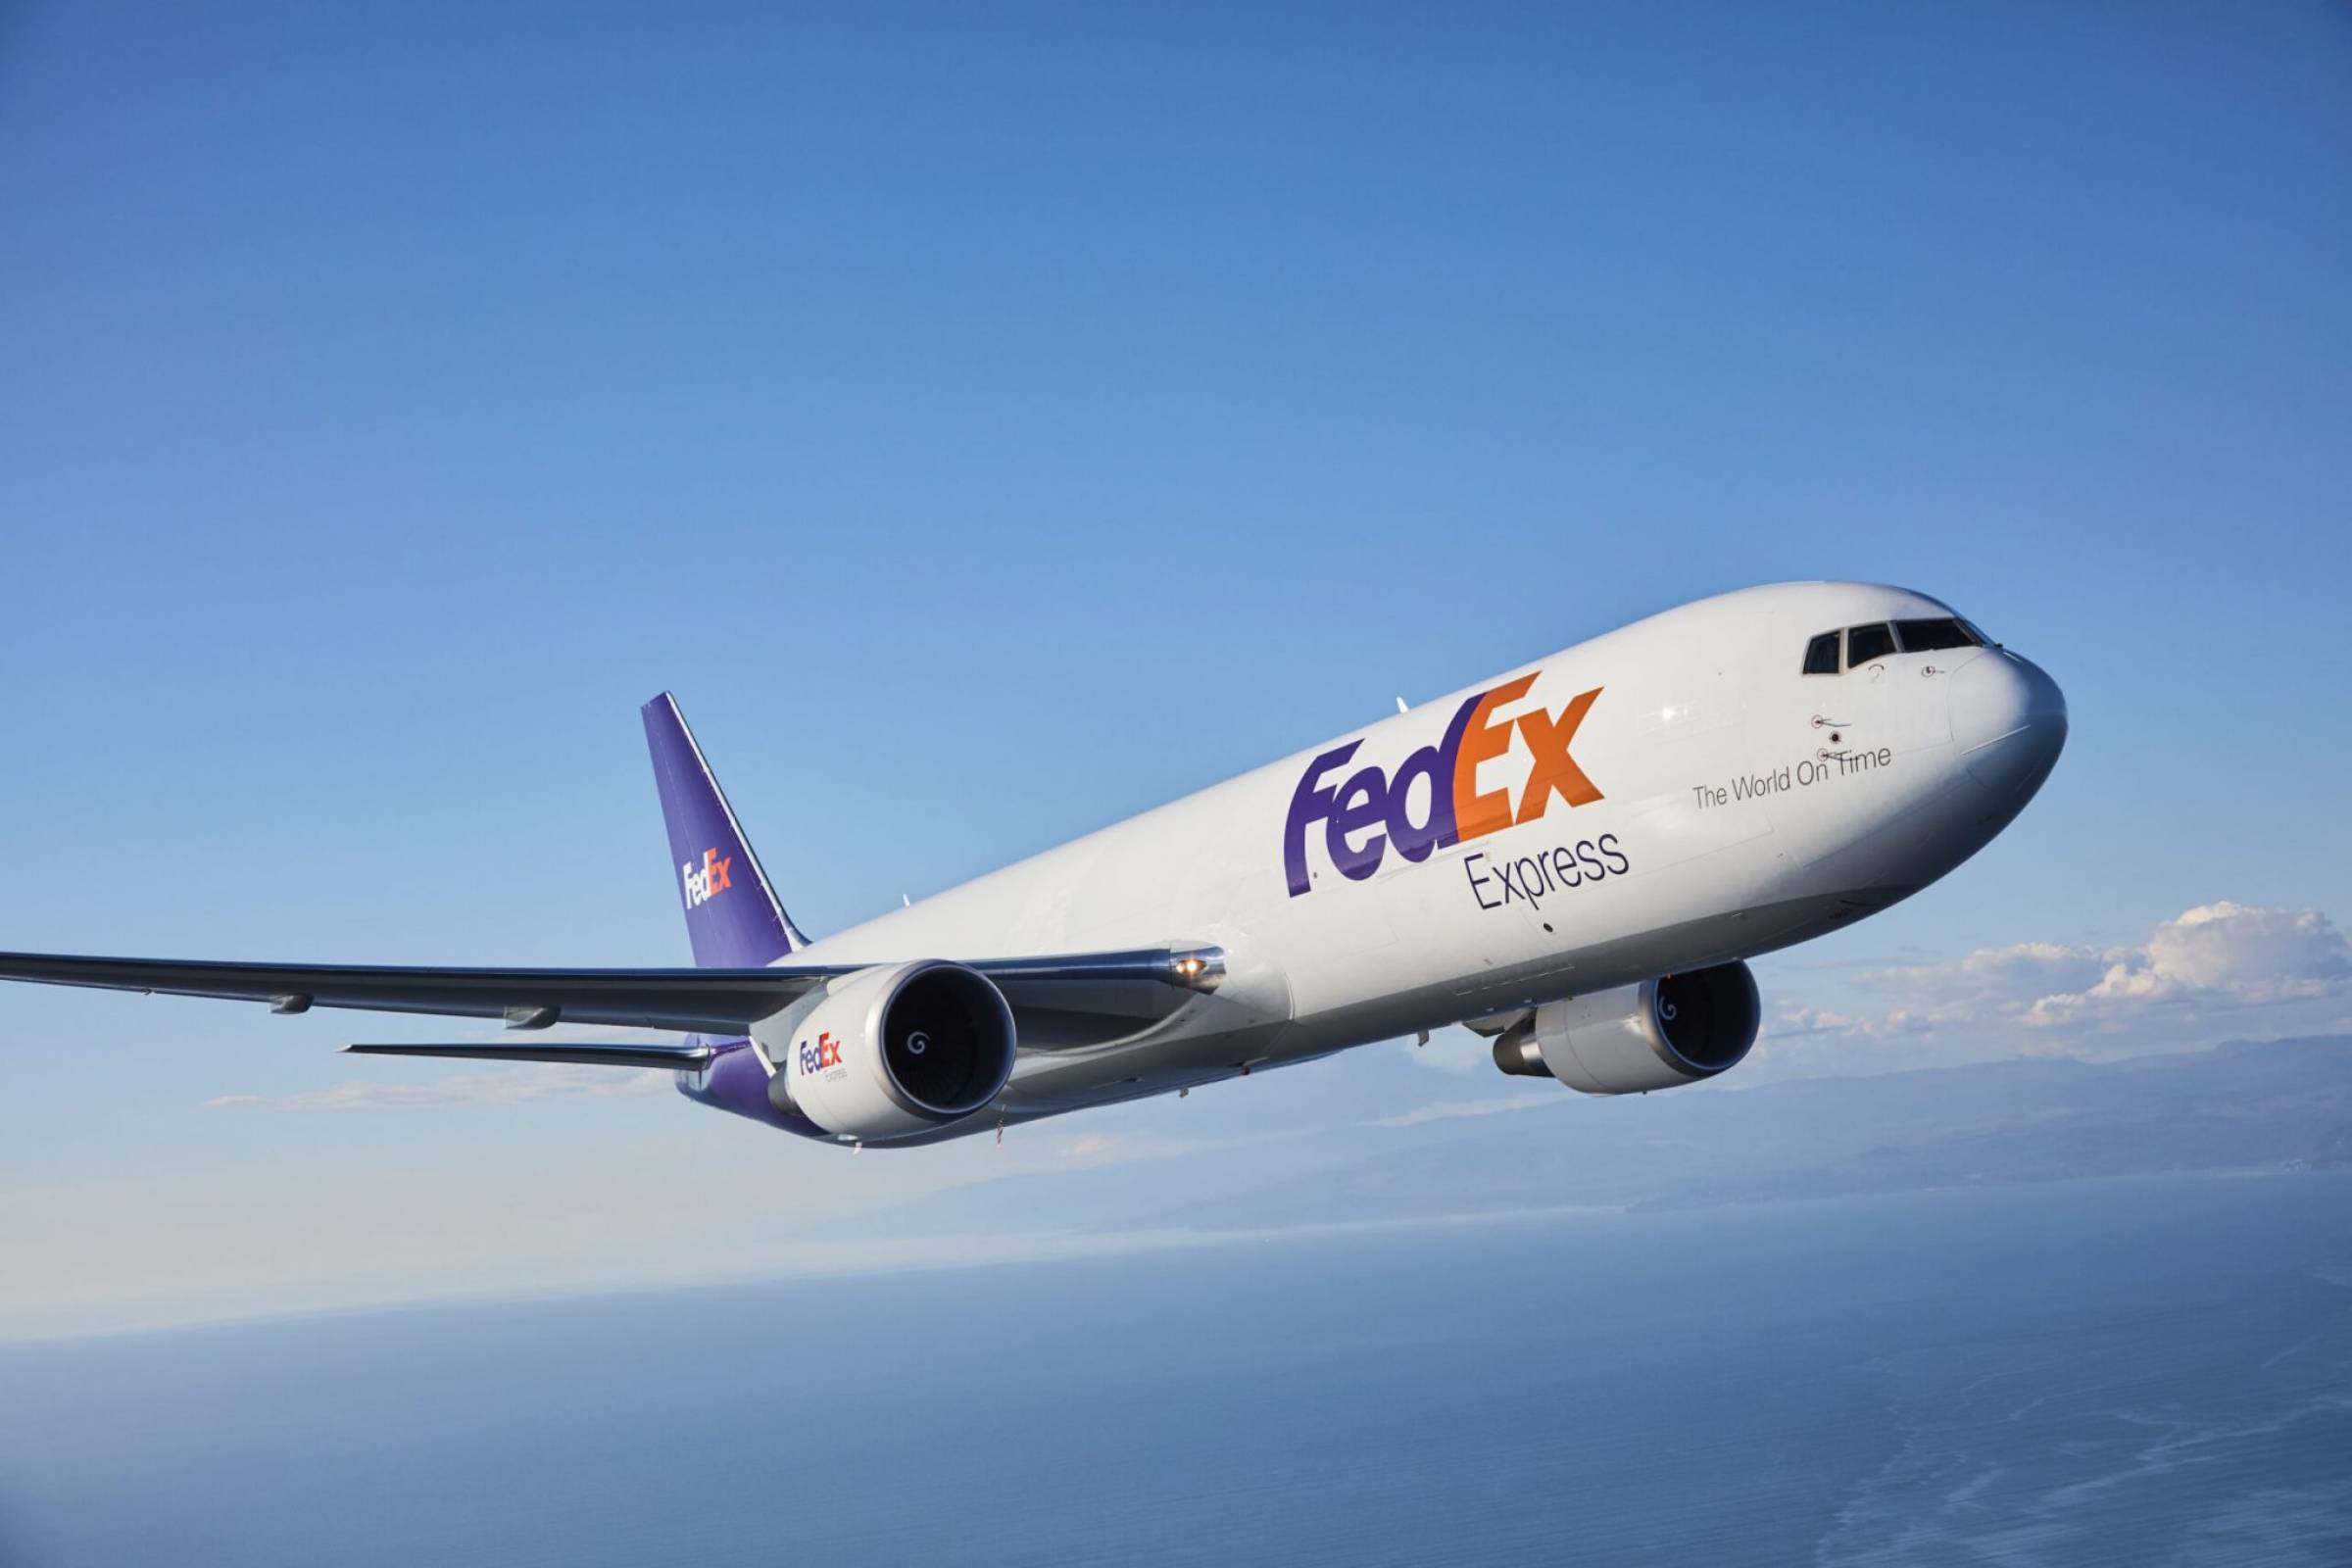 FedEx France